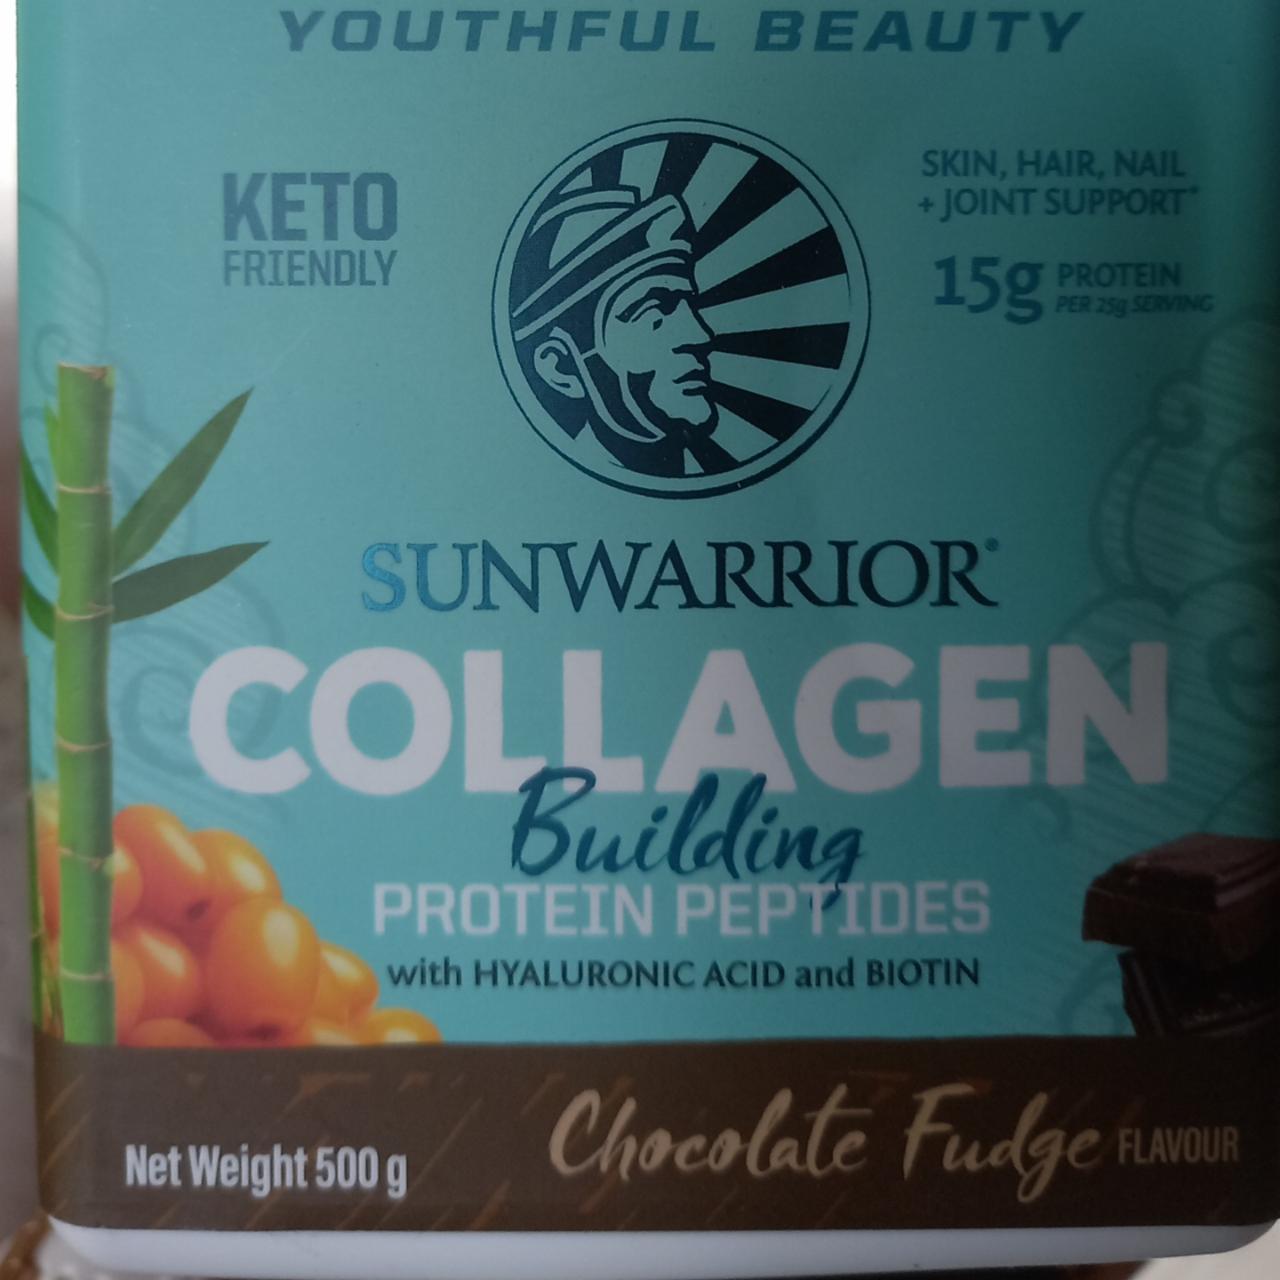 Fotografie - Collagen building protein peptides chocolate fudge flavour Sunwarrior